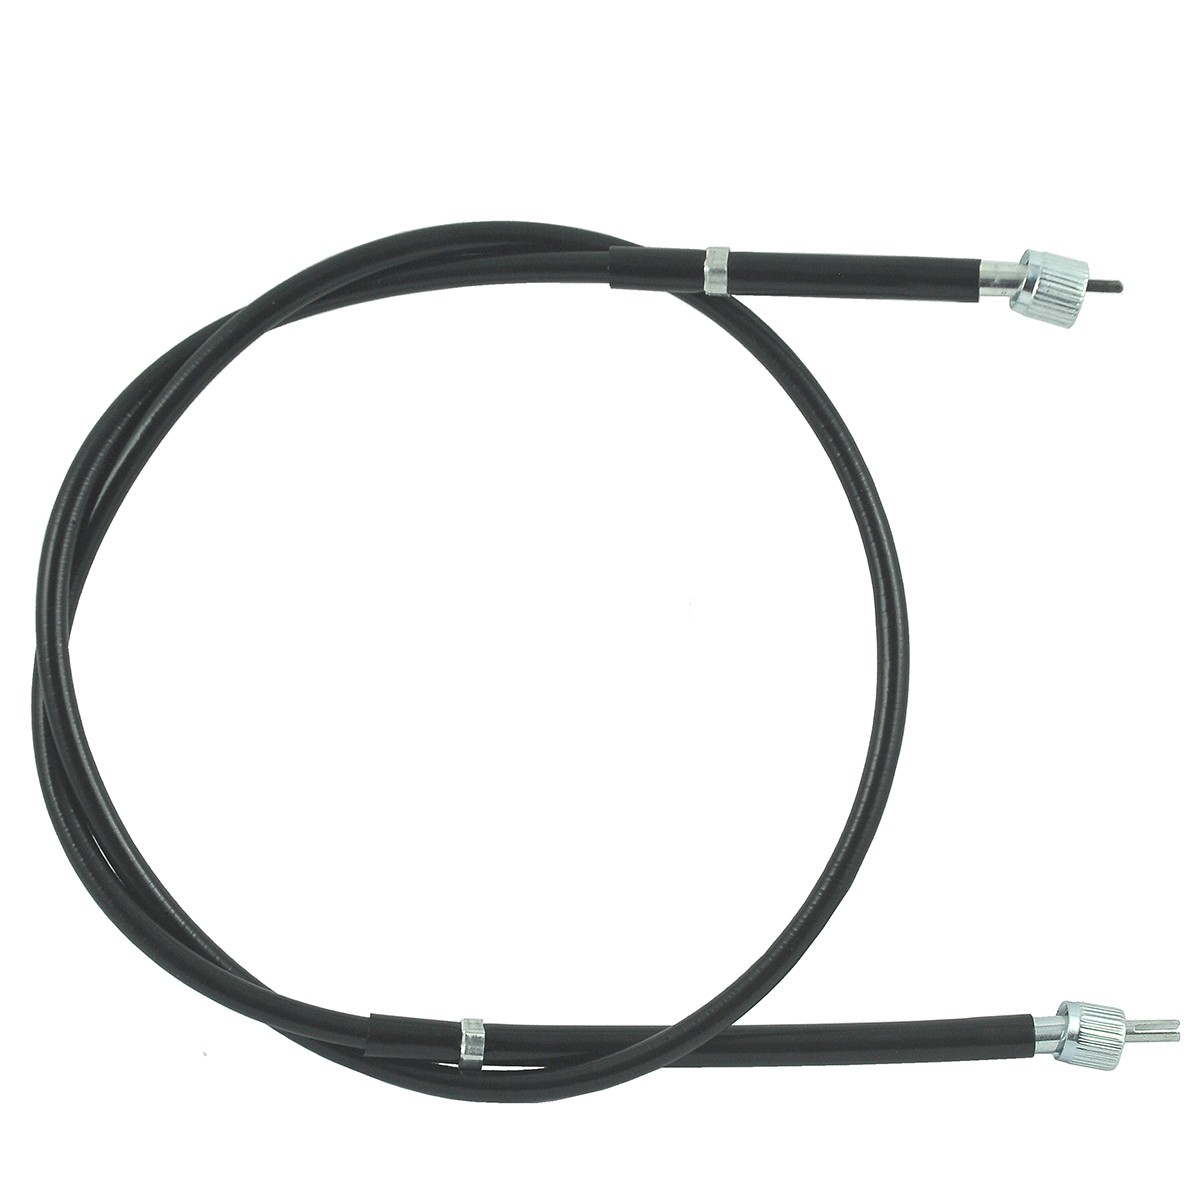 Cable medidor / 1145 mm / Kubota L3600/L4200/L4310/L4508/L4610 / TA040-30610 / W9501-45001 / 5-25-123-14